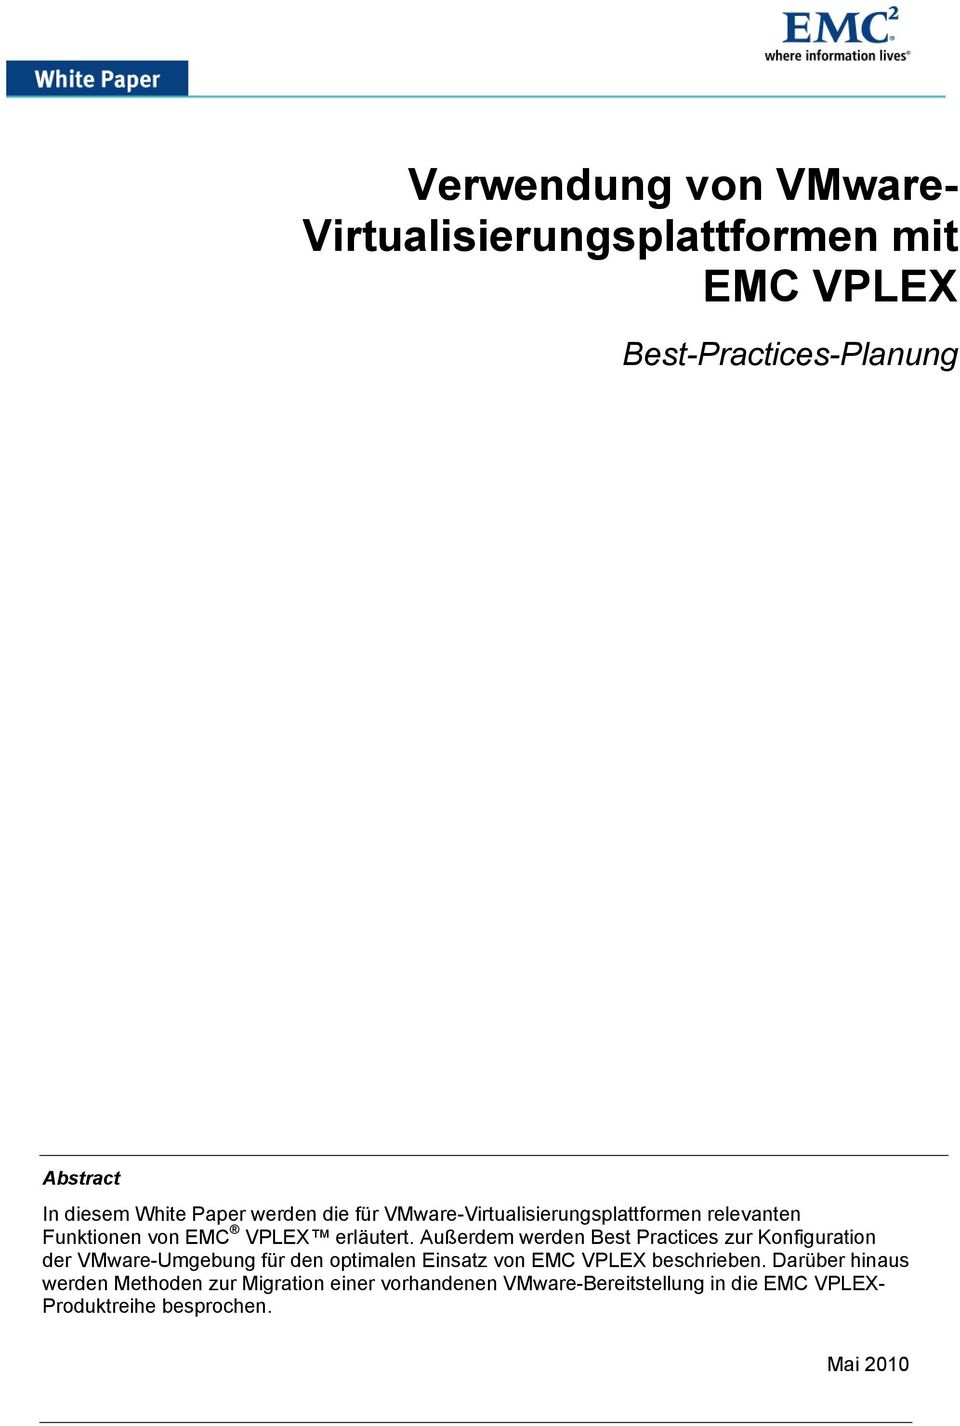 Außerdem werden Best Practices zur Konfiguration der VMware-Umgebung für den optimalen Einsatz von EMC VPLEX